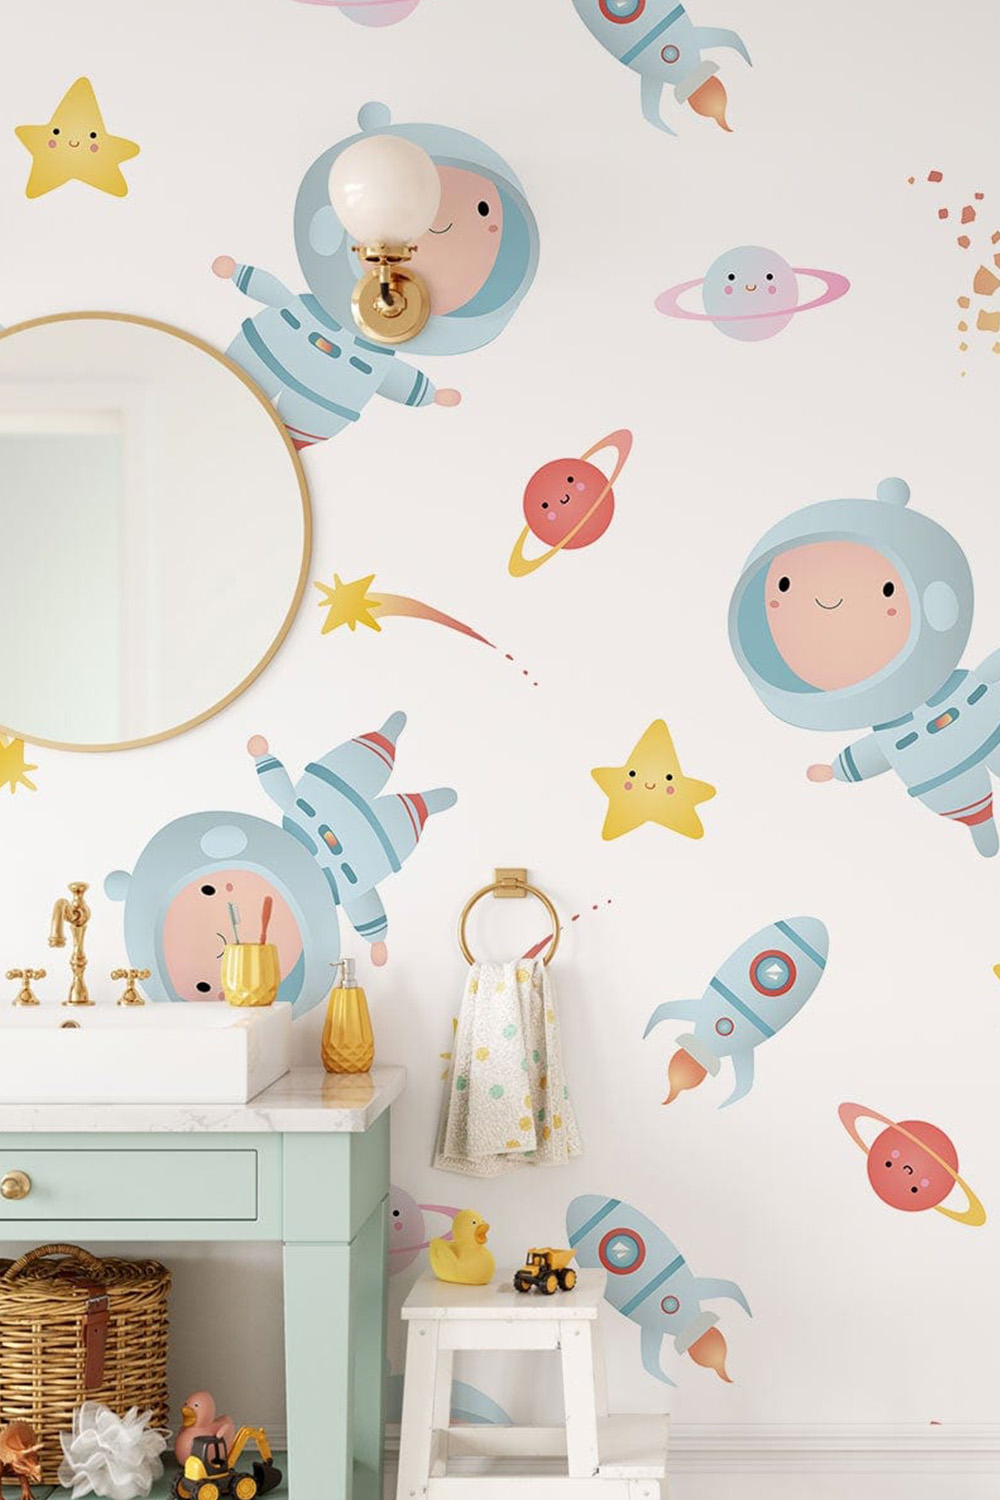 Cartoon galaxy astronaut wallpaper for a children's room